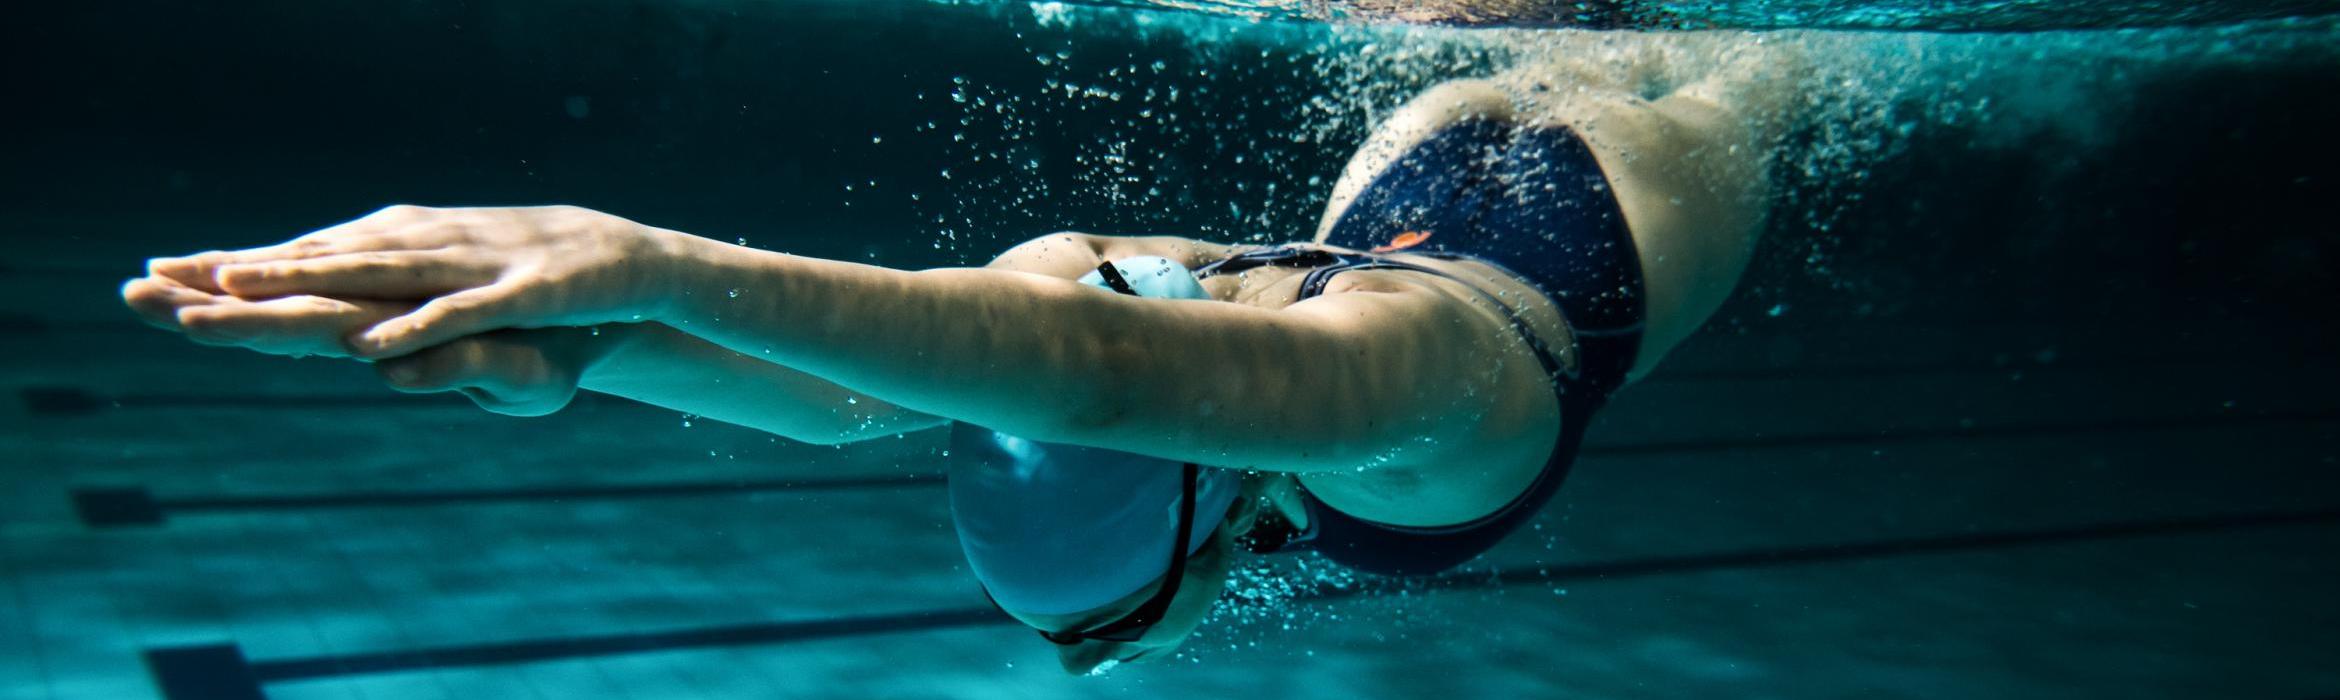 Mujer entrando de cabeza en piscina, foto bajo el agua